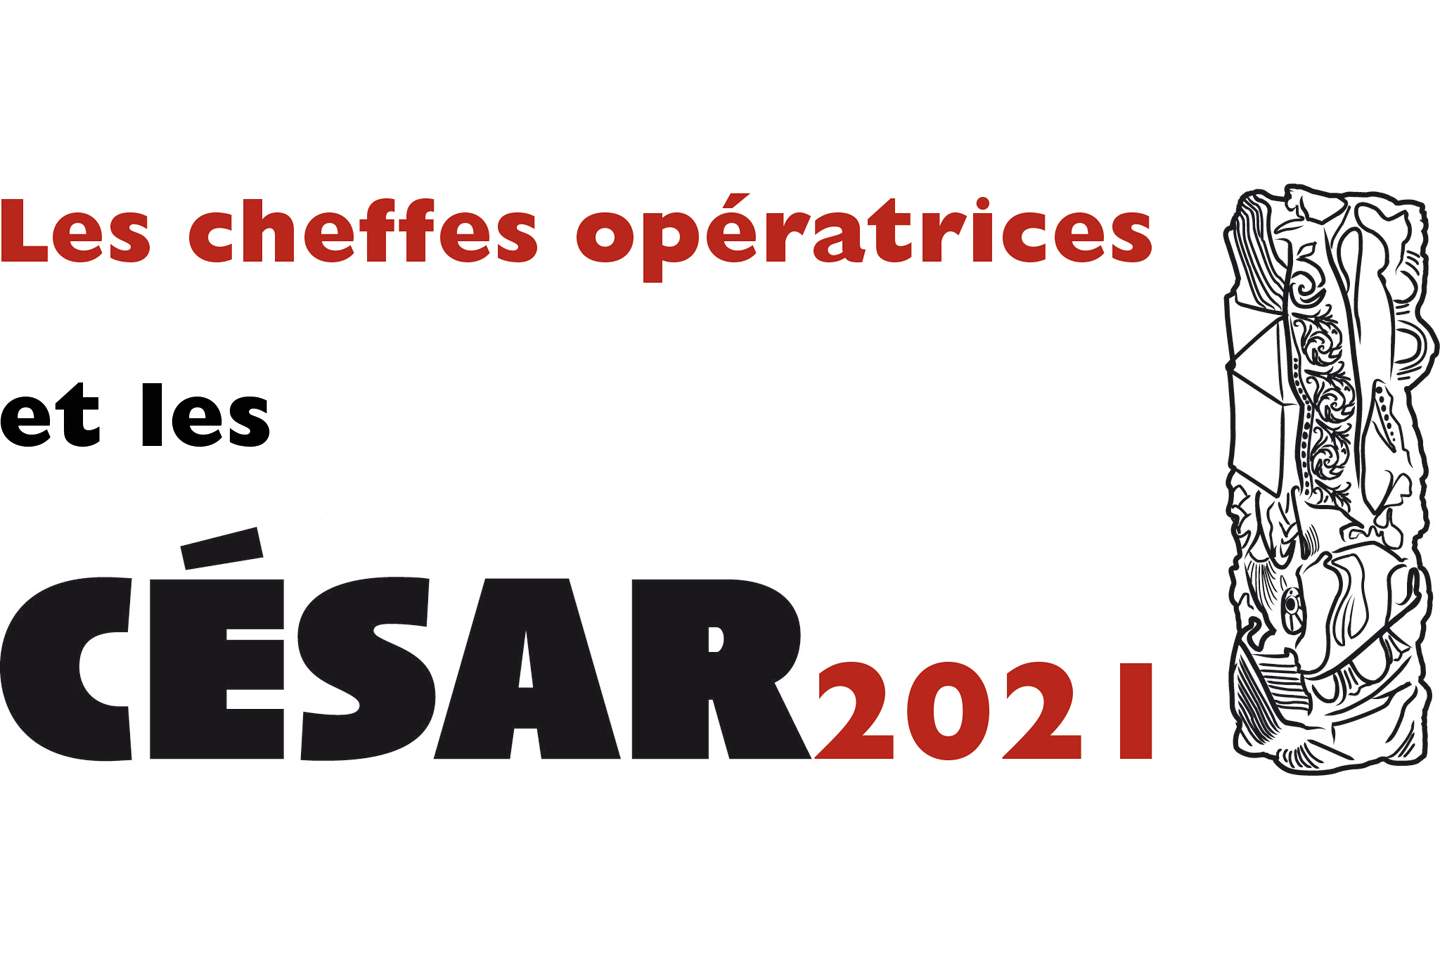 Les cheffes opératrices et les César 2021